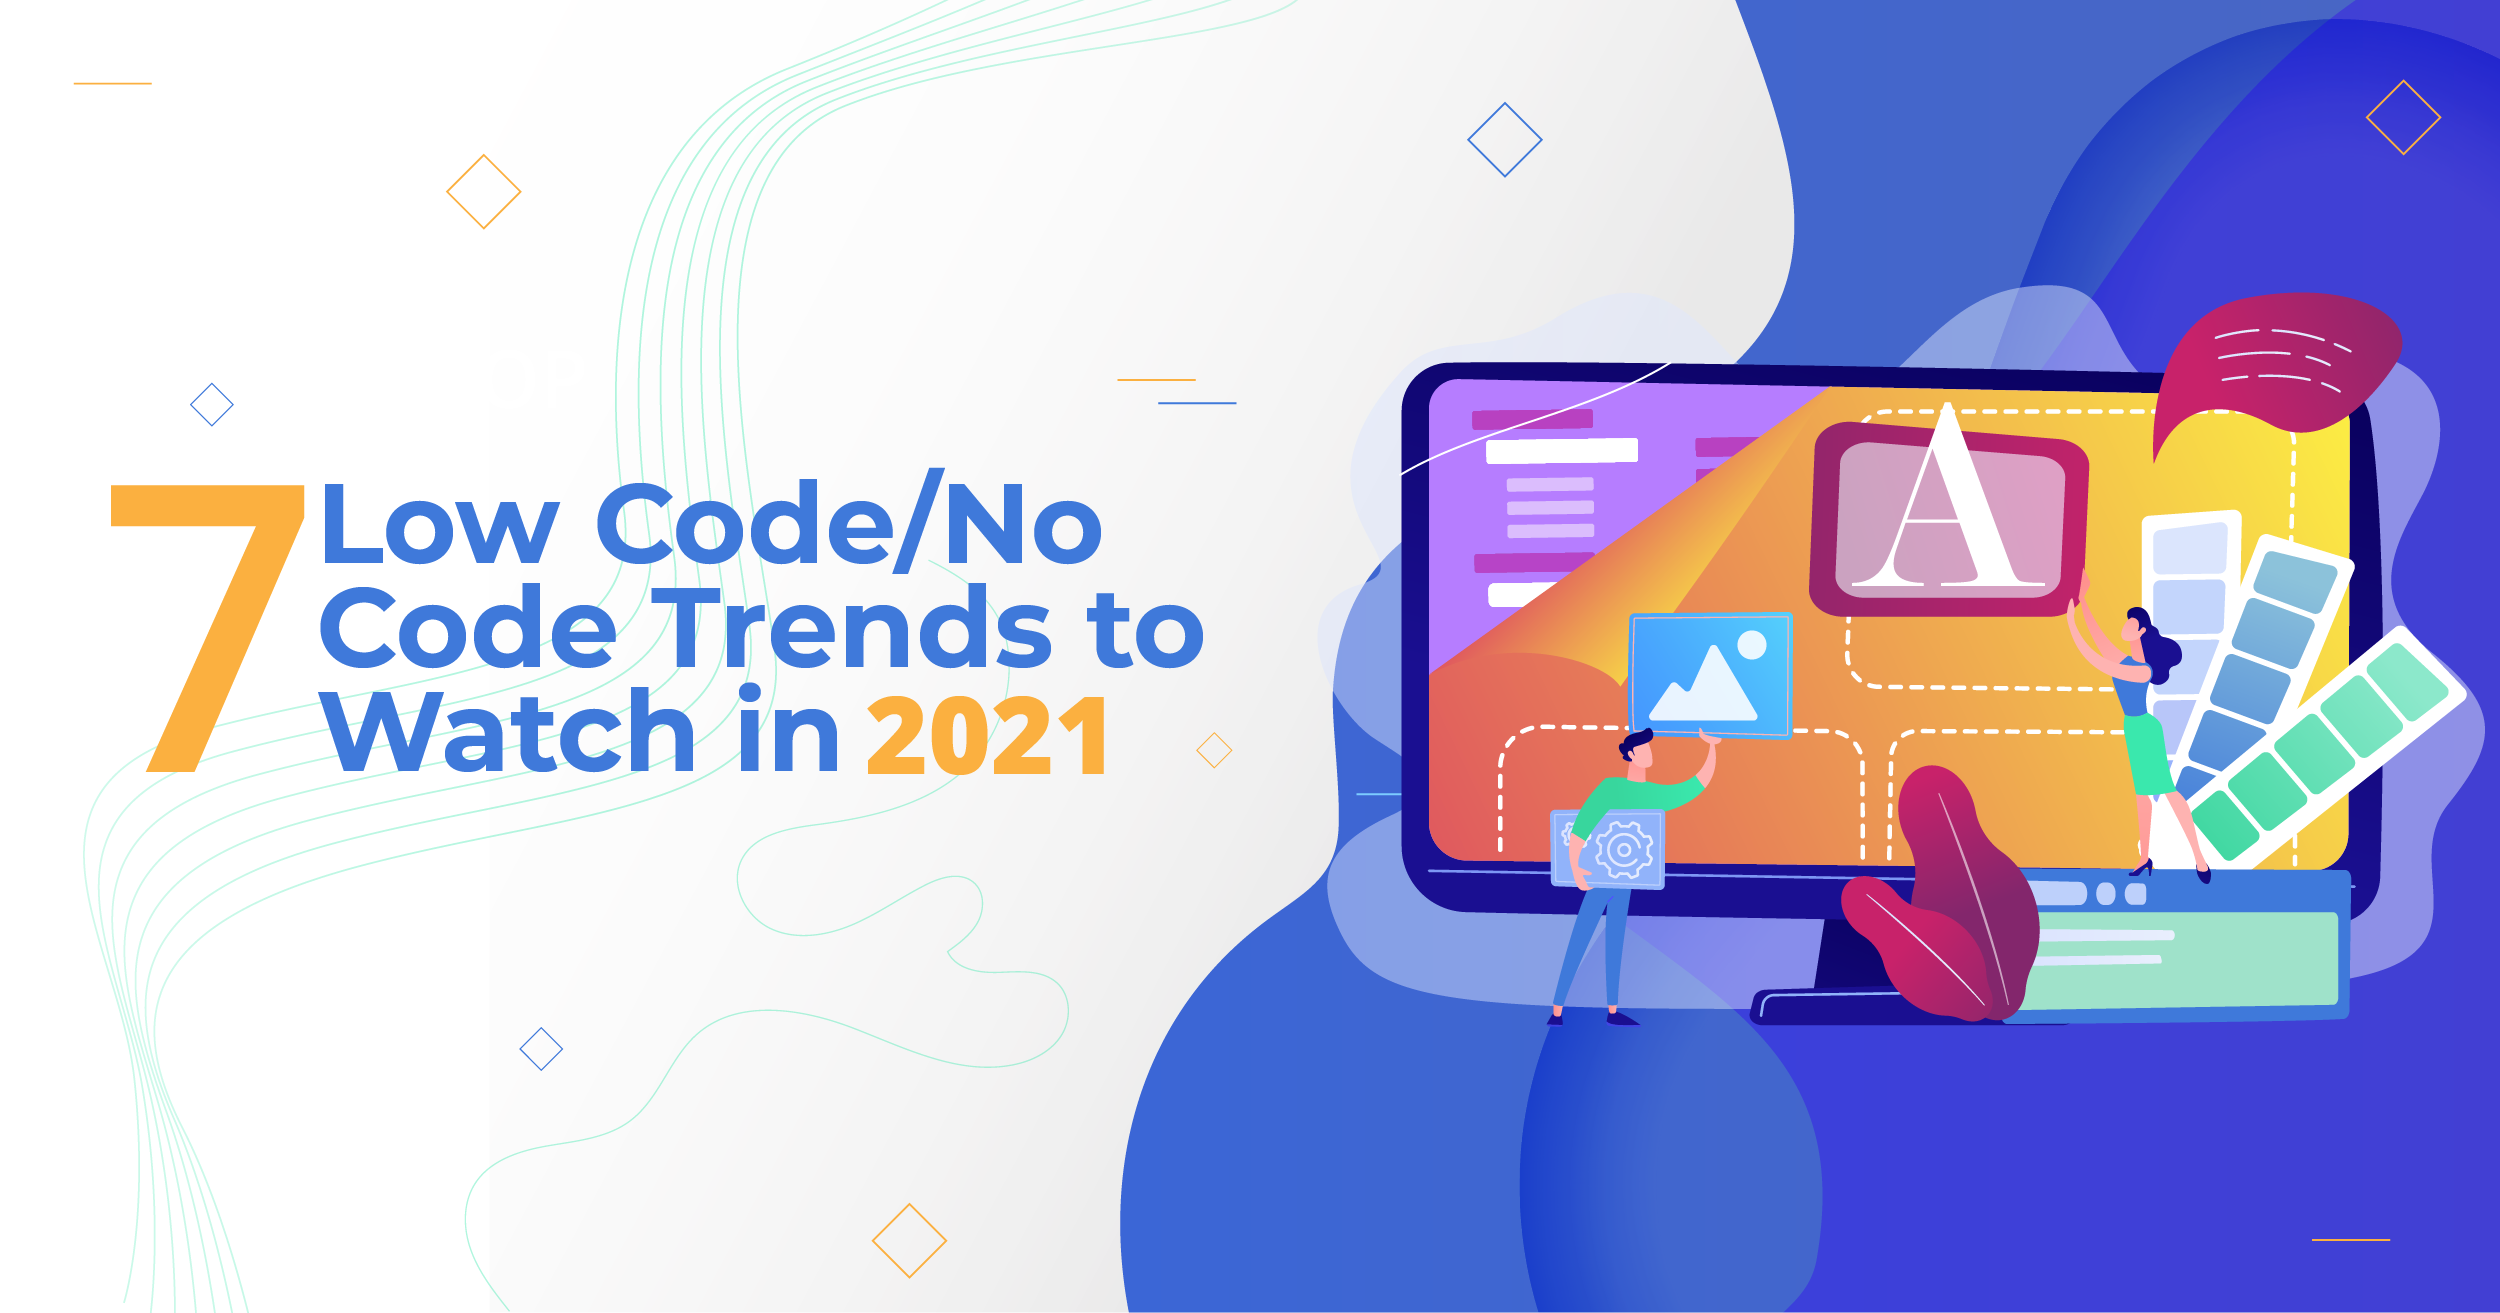 7 Low Code/No Code Trends to Watch in 2021